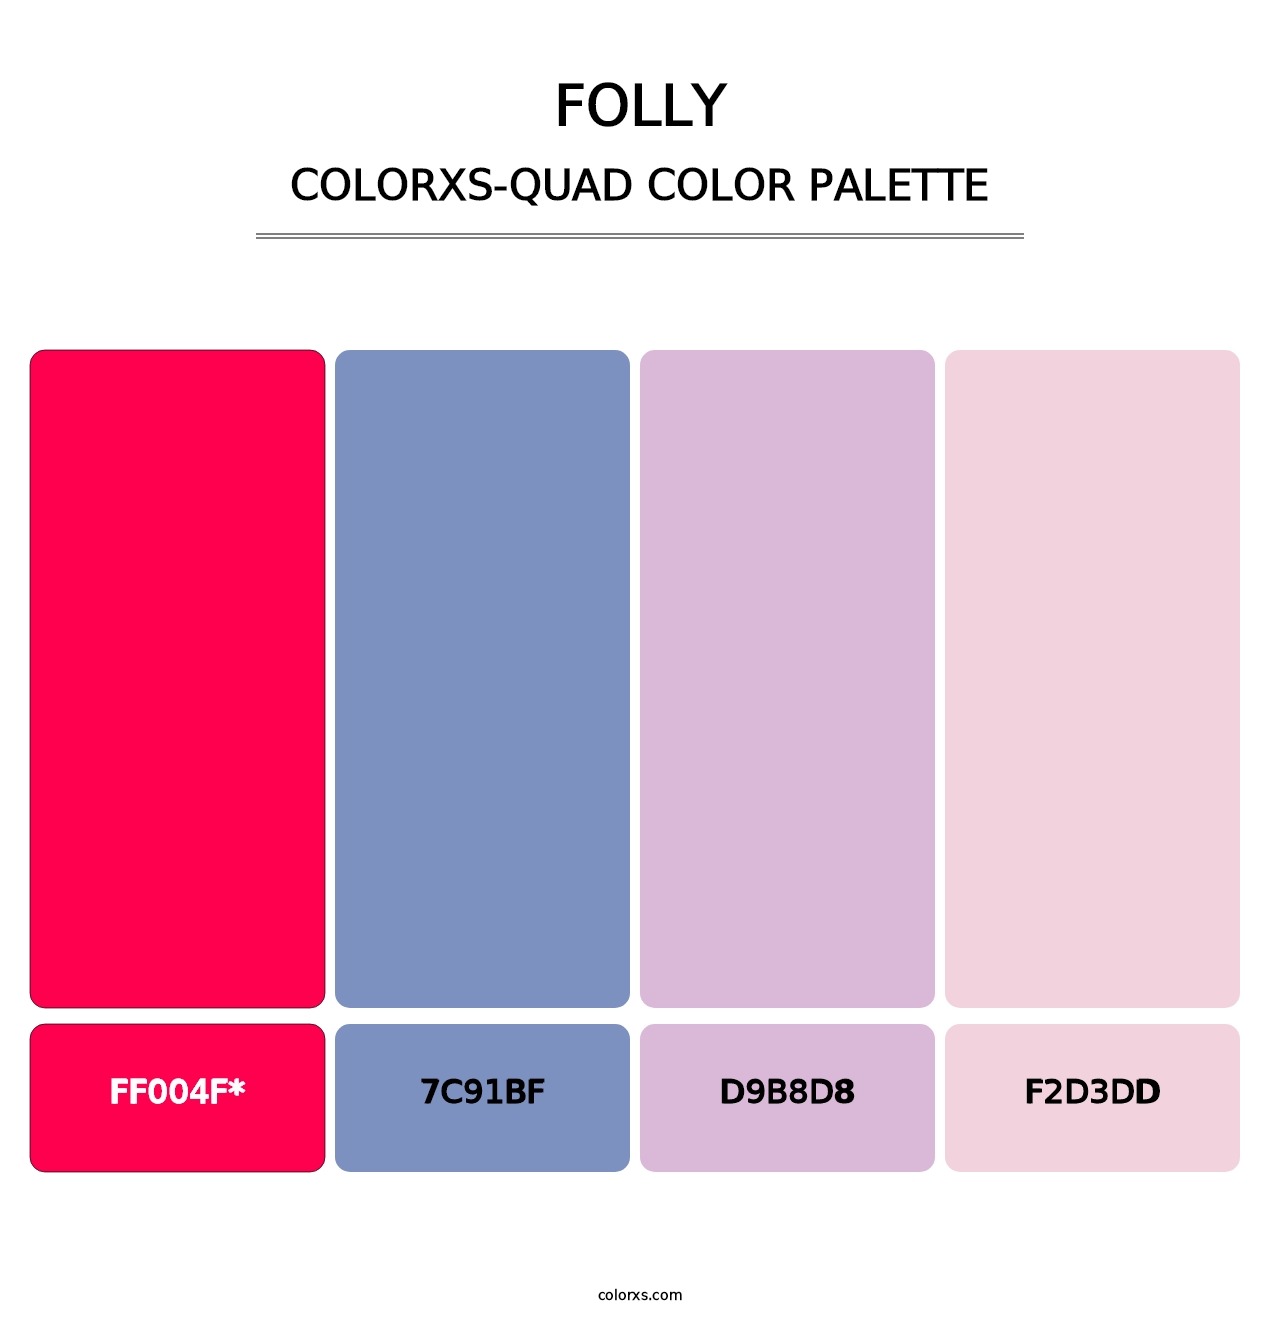 Folly - Colorxs Quad Palette